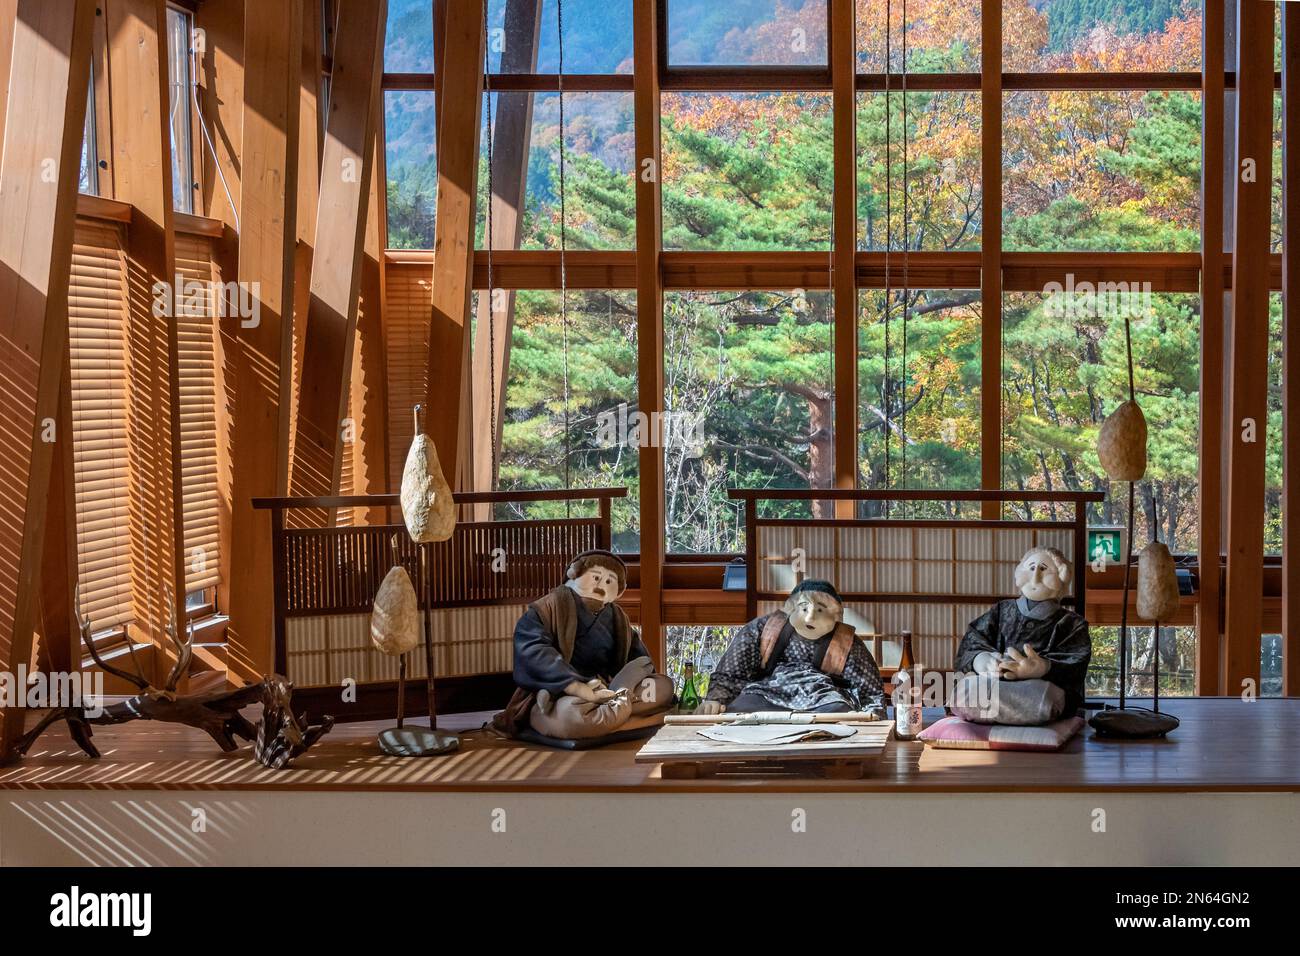 Trois kakashi (poupées de scarecrow) assis dans un restaurant, vallée d'Iya, île de Shikoku, Japon Banque D'Images